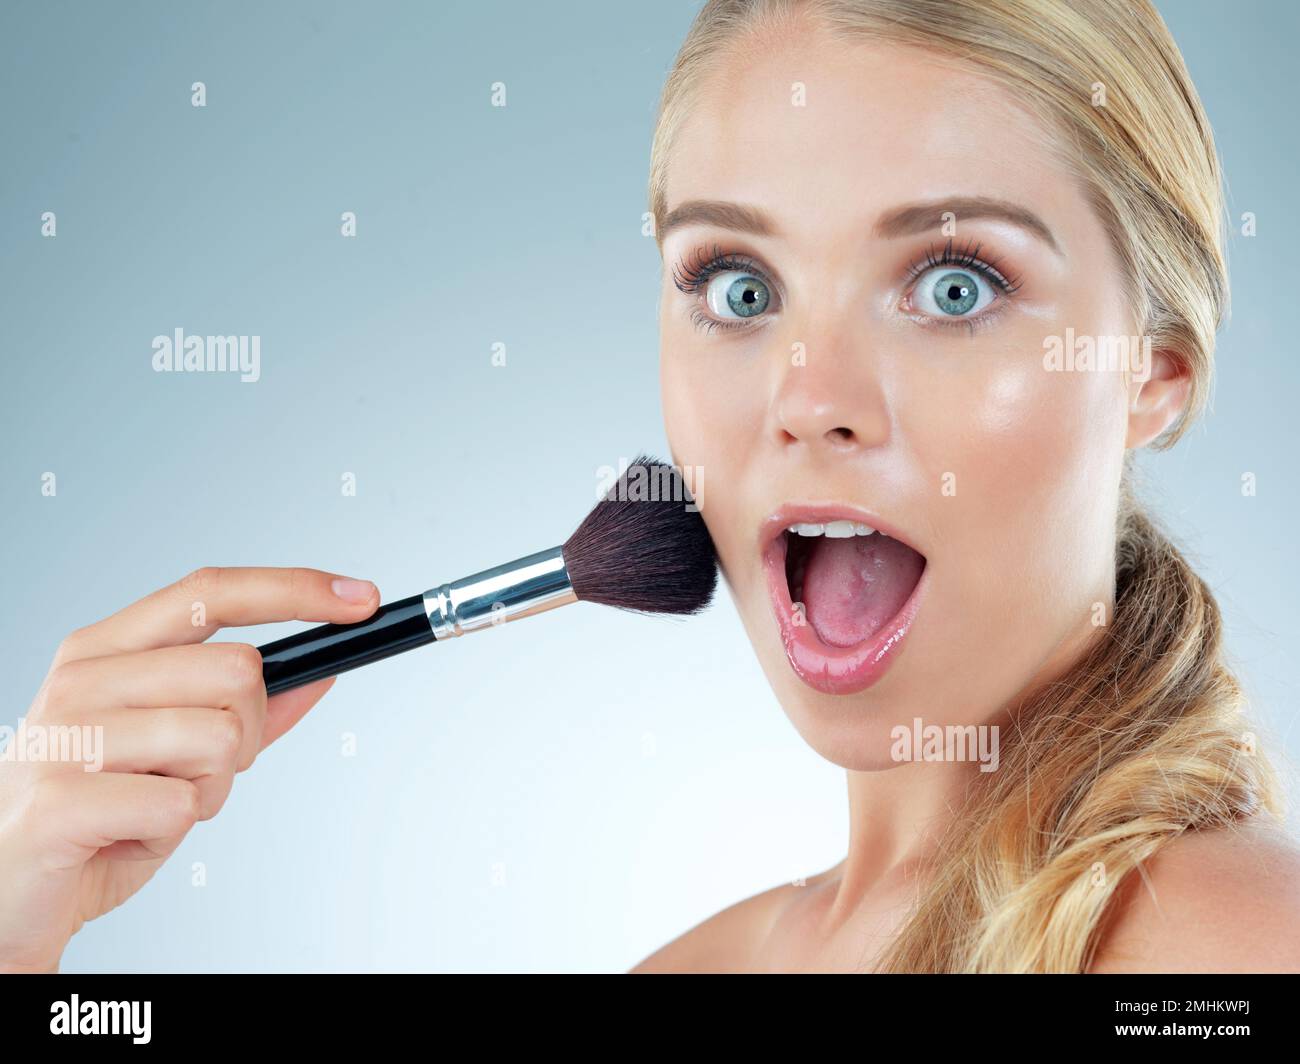 Dieser Rotzlöffel wird Sie sprachlos machen. Studioporträt einer wunderschönen jungen Frau mit einem Make-up-Pinsel vor blauem Hintergrund. Stockfoto